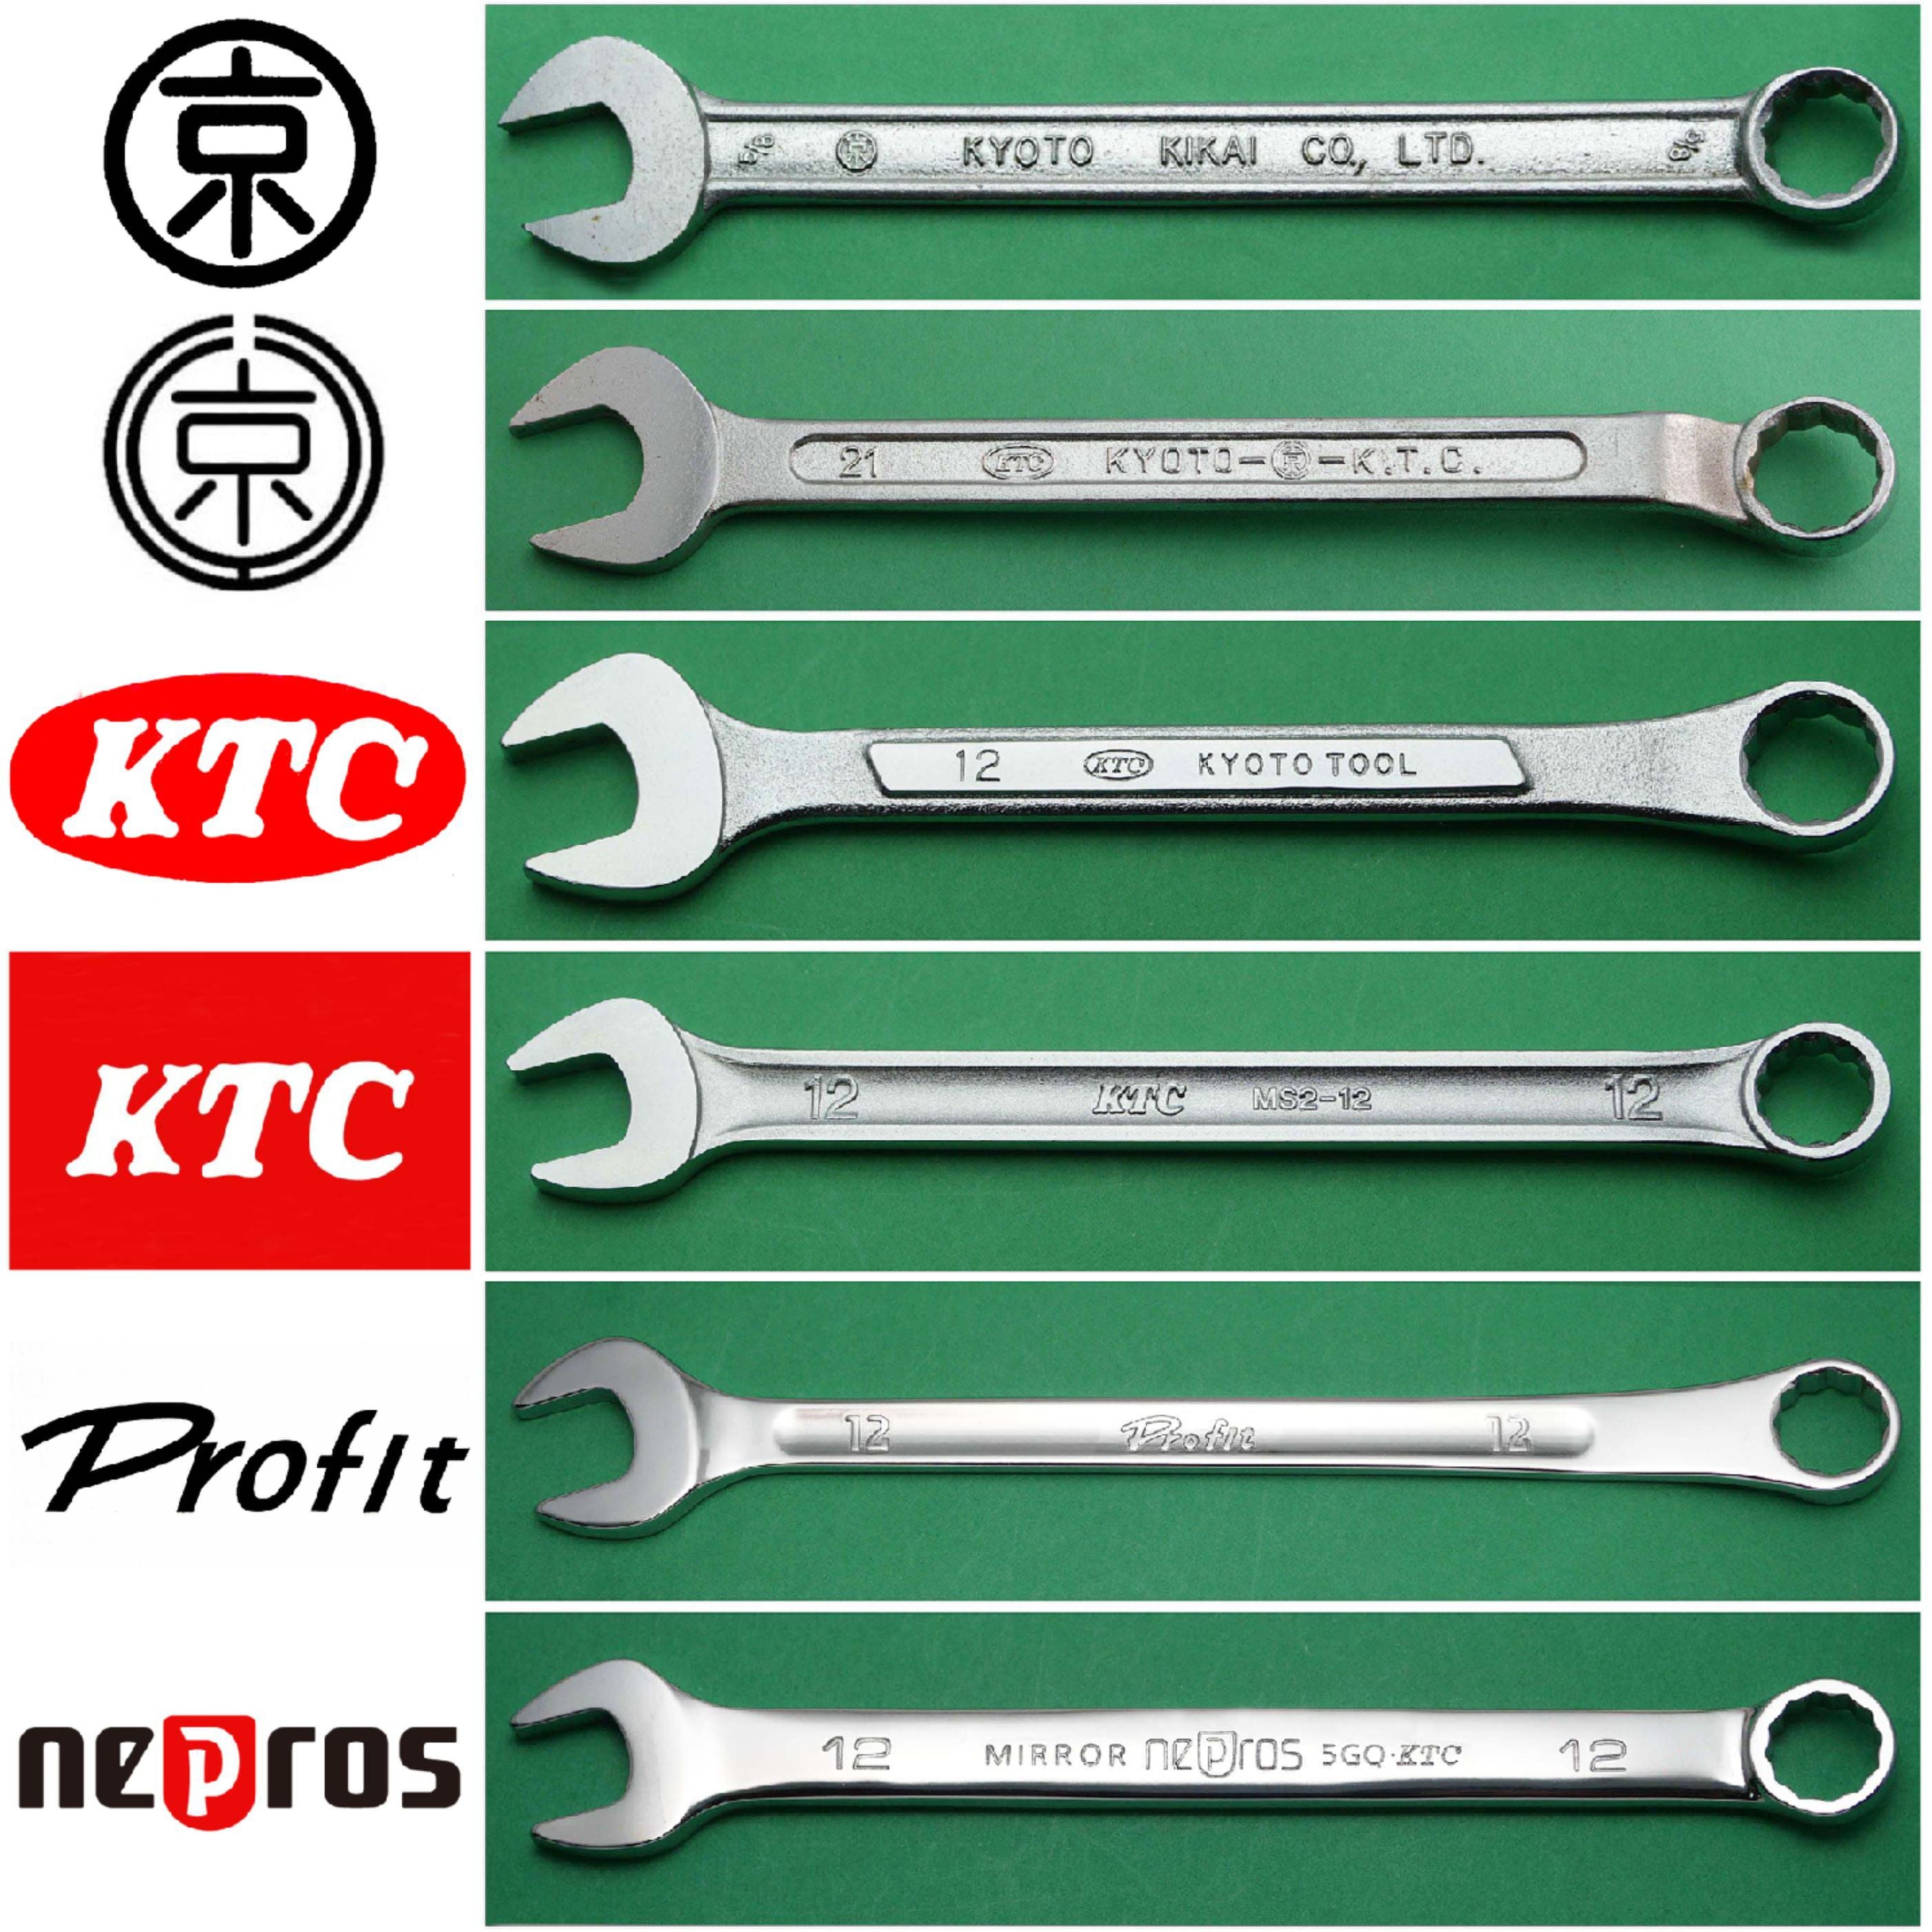 柔らかい 京都機械工具(KTC) ネプロス ショートコンビネーションレンチ NMS2S-08